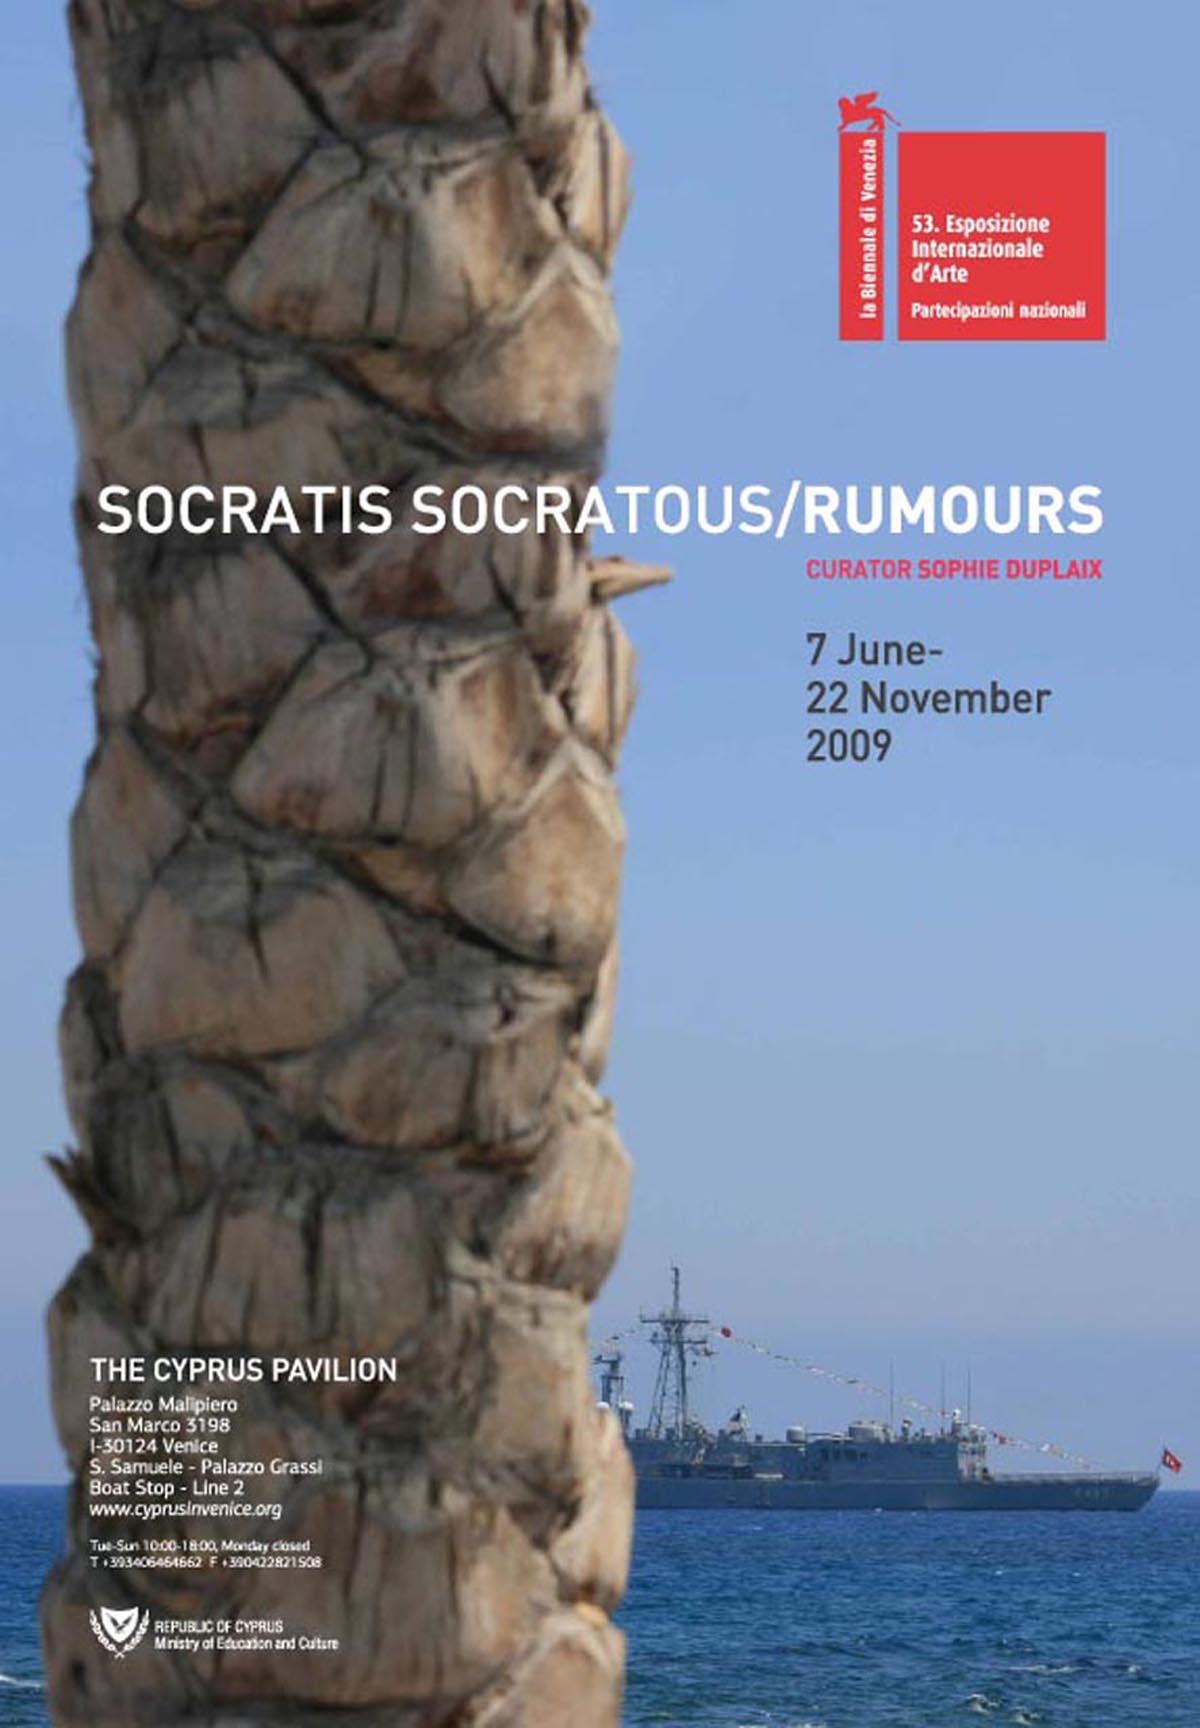 Socratis Socratous, Rumours, 2009, Poster for the Cyprus Pavilion at the 53rd International Art Exhibition  – La Biennale di Venezia. Photograph by: Socratis Socratous.